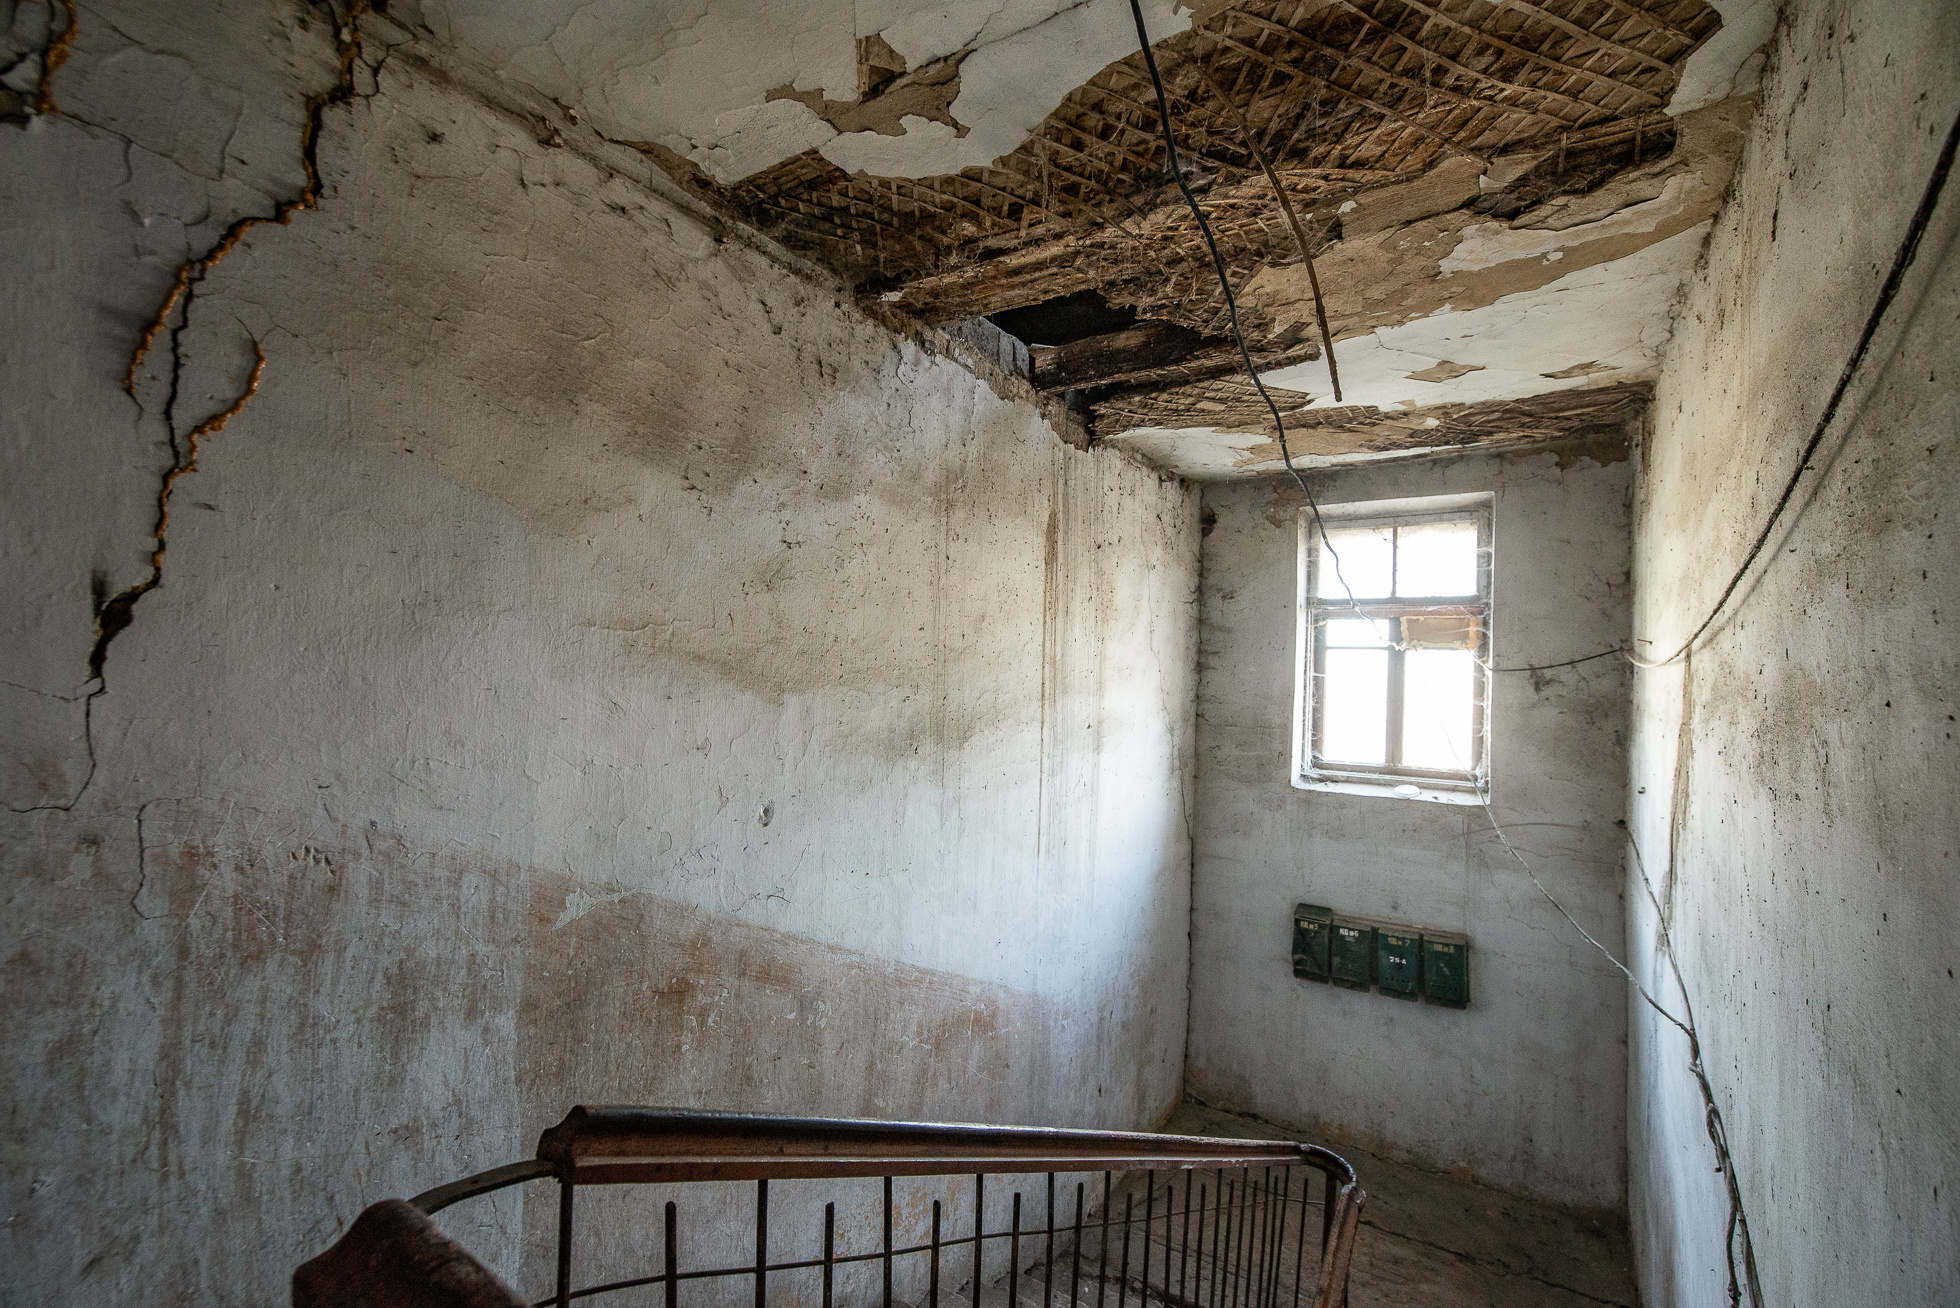 Квартиры на Урале многодетным. Семья живет в разрушенном доме деревянном. 4 и 5 дома пустые